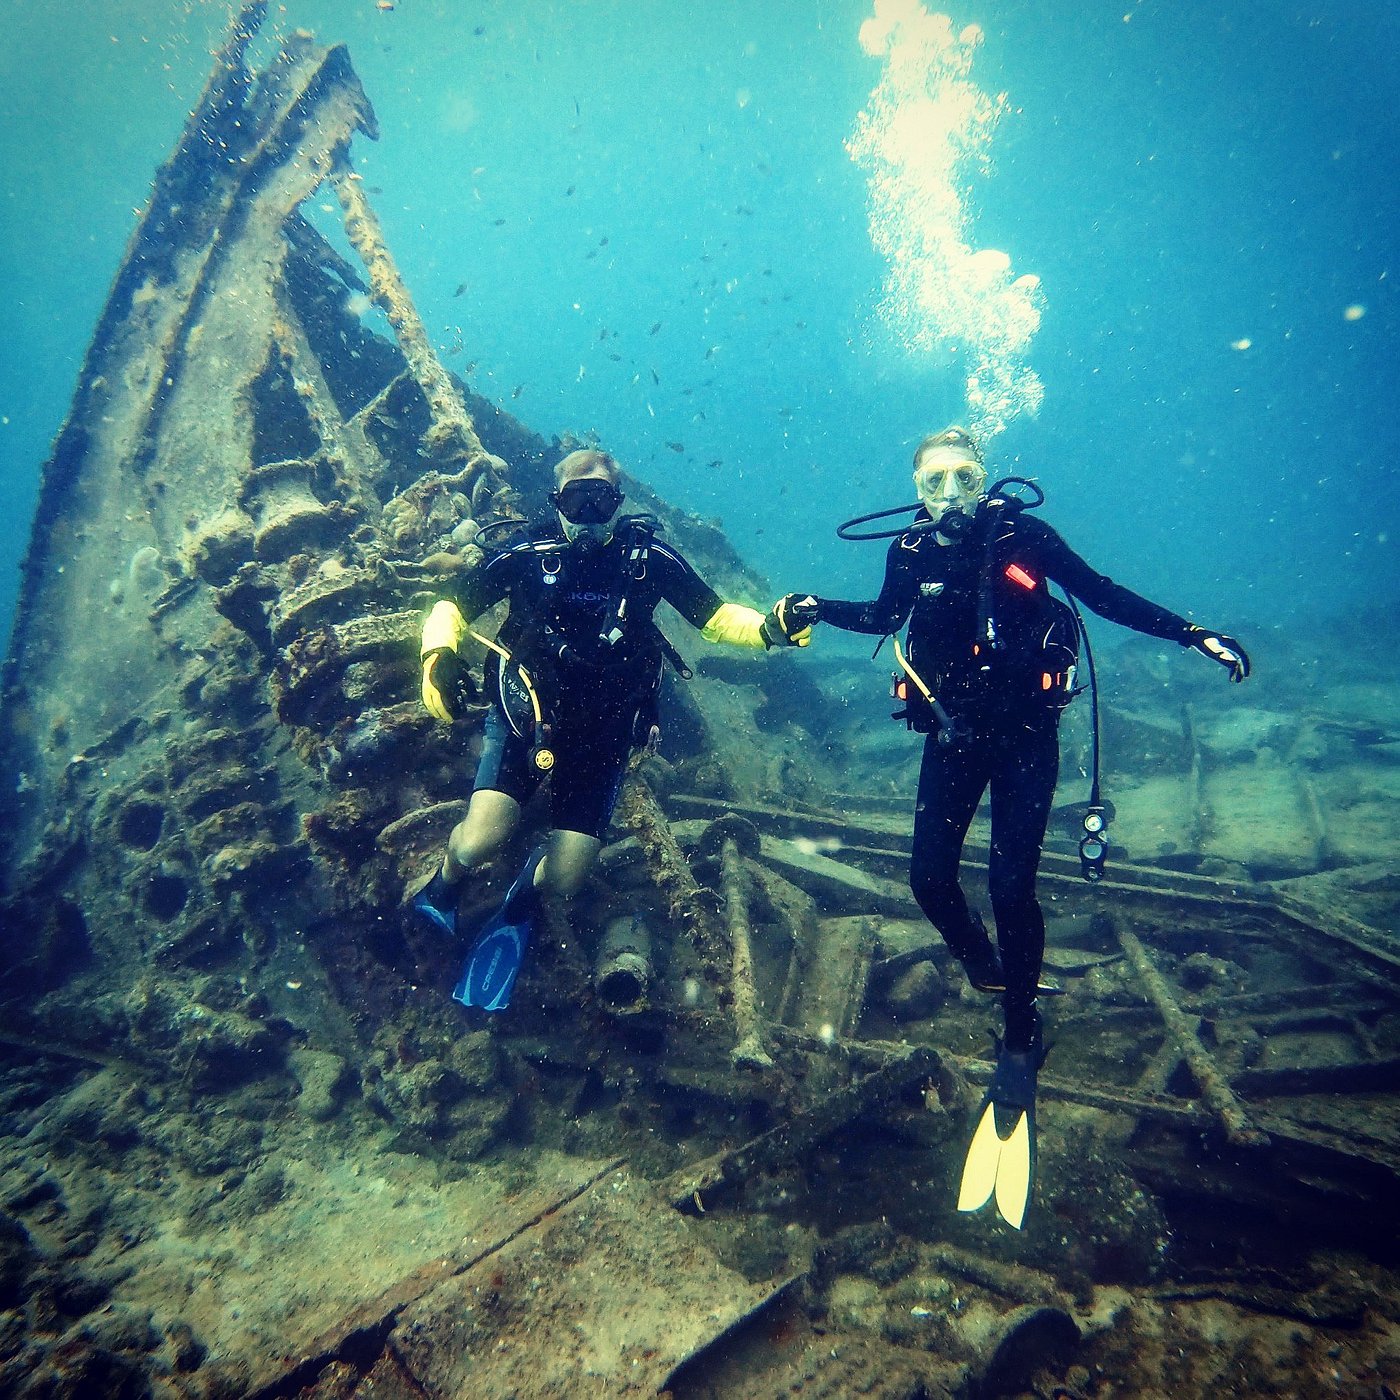 shipwreck diving